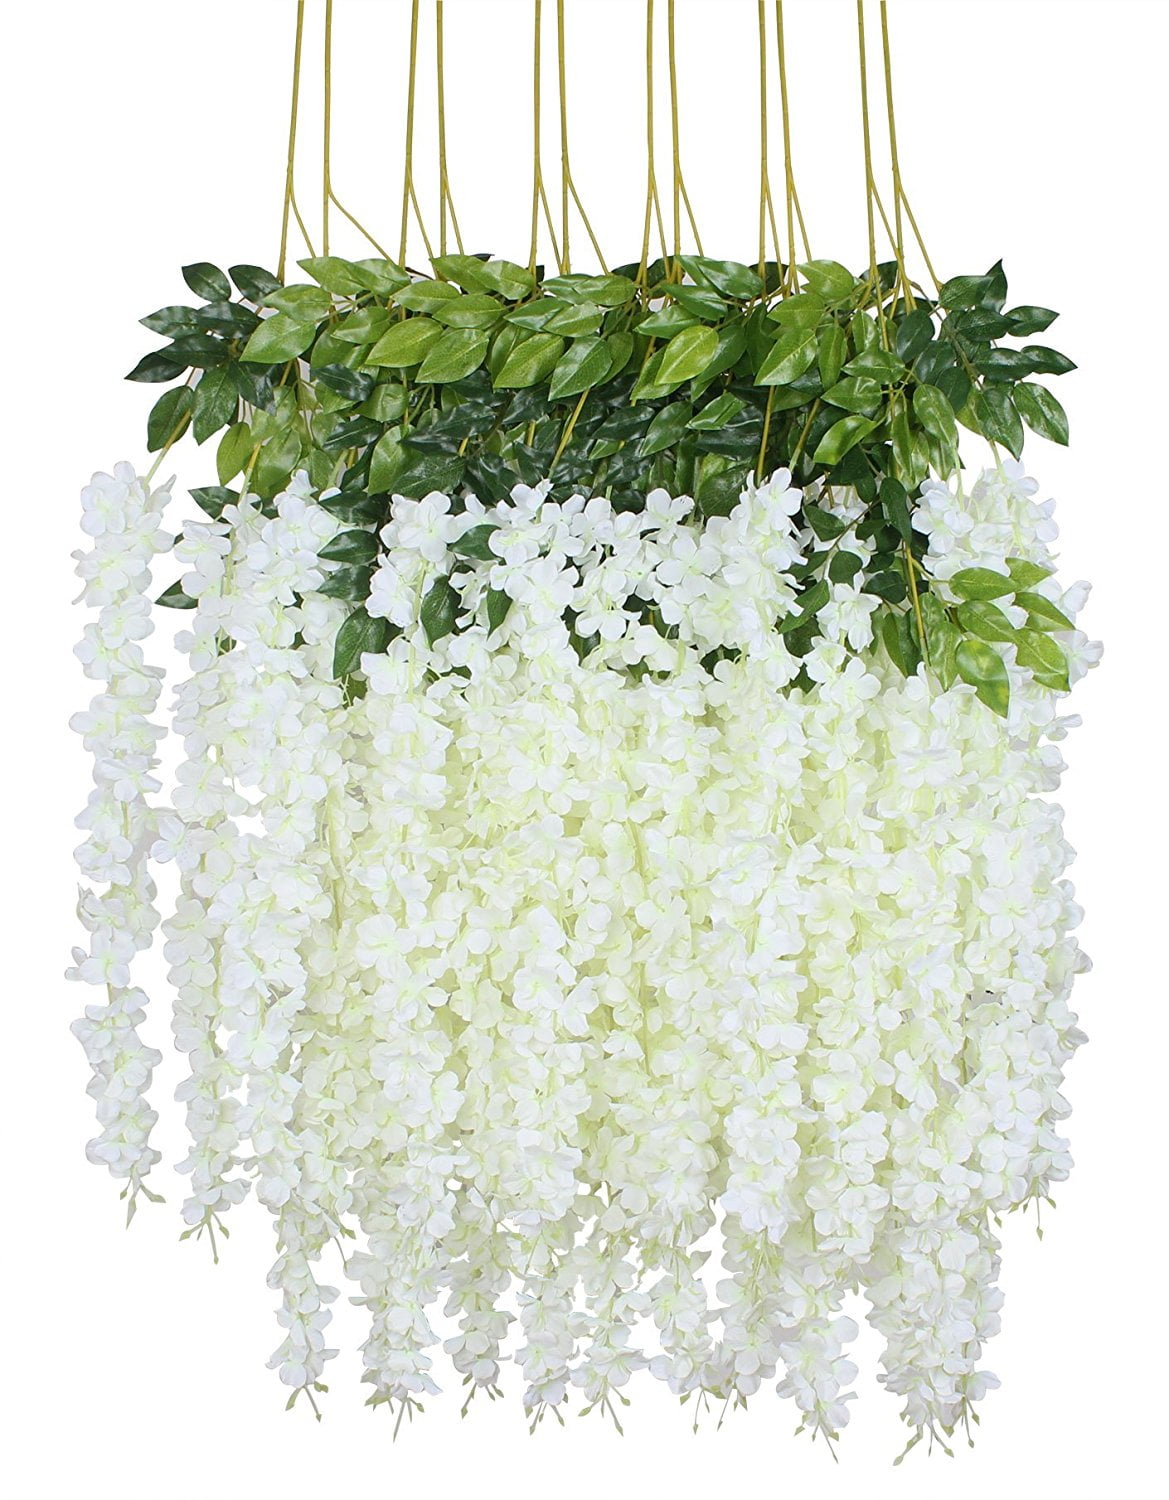 Artificial Wisteria Vine Garland Fake Flower Plants Garden Wedding Hanging Decor 